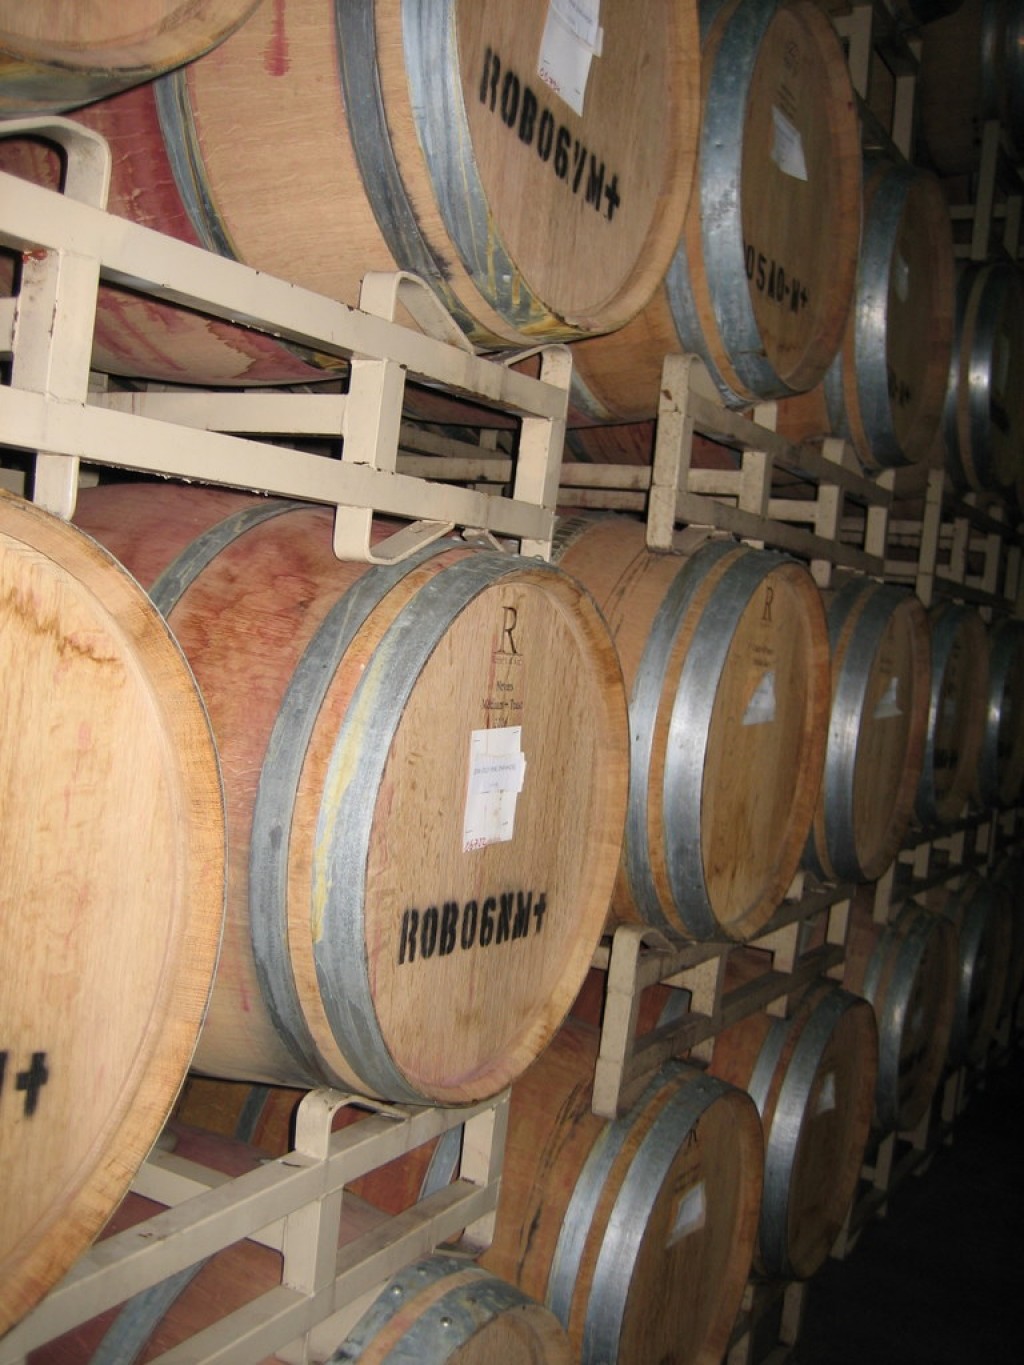 Barrel storage at Dry Creek Vineyard winery, photo taken during barrel tasting